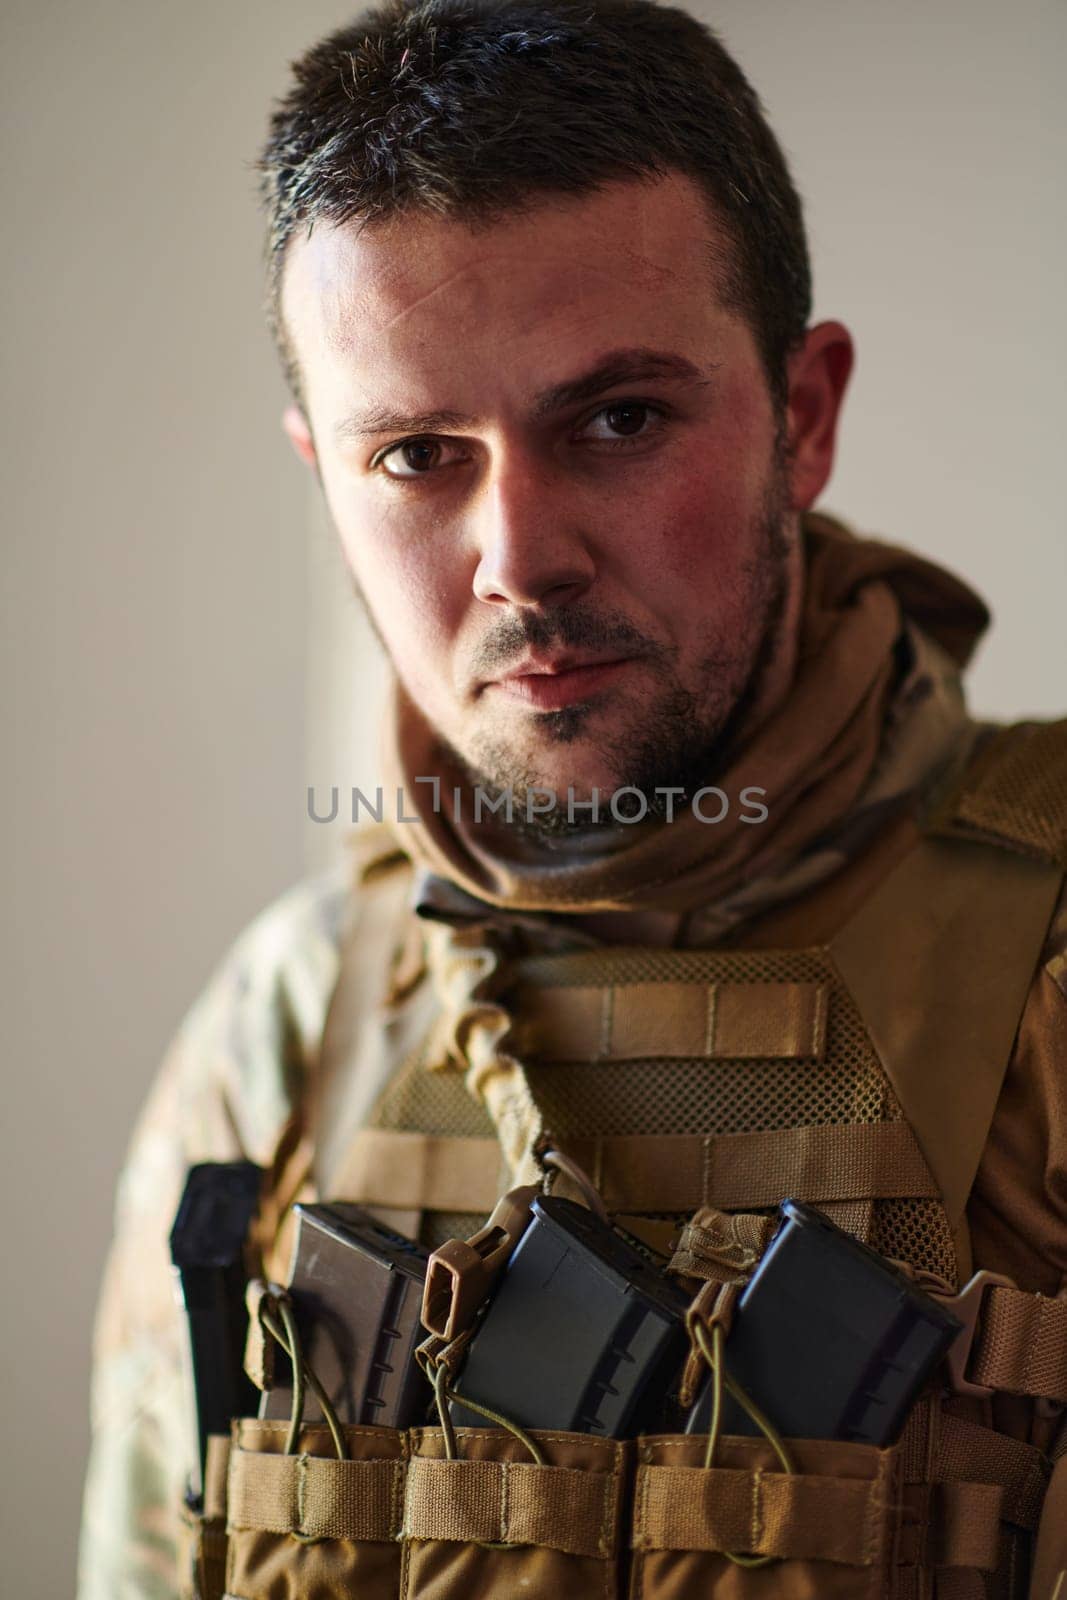 Modern warfare soldier portrait in urban environment.